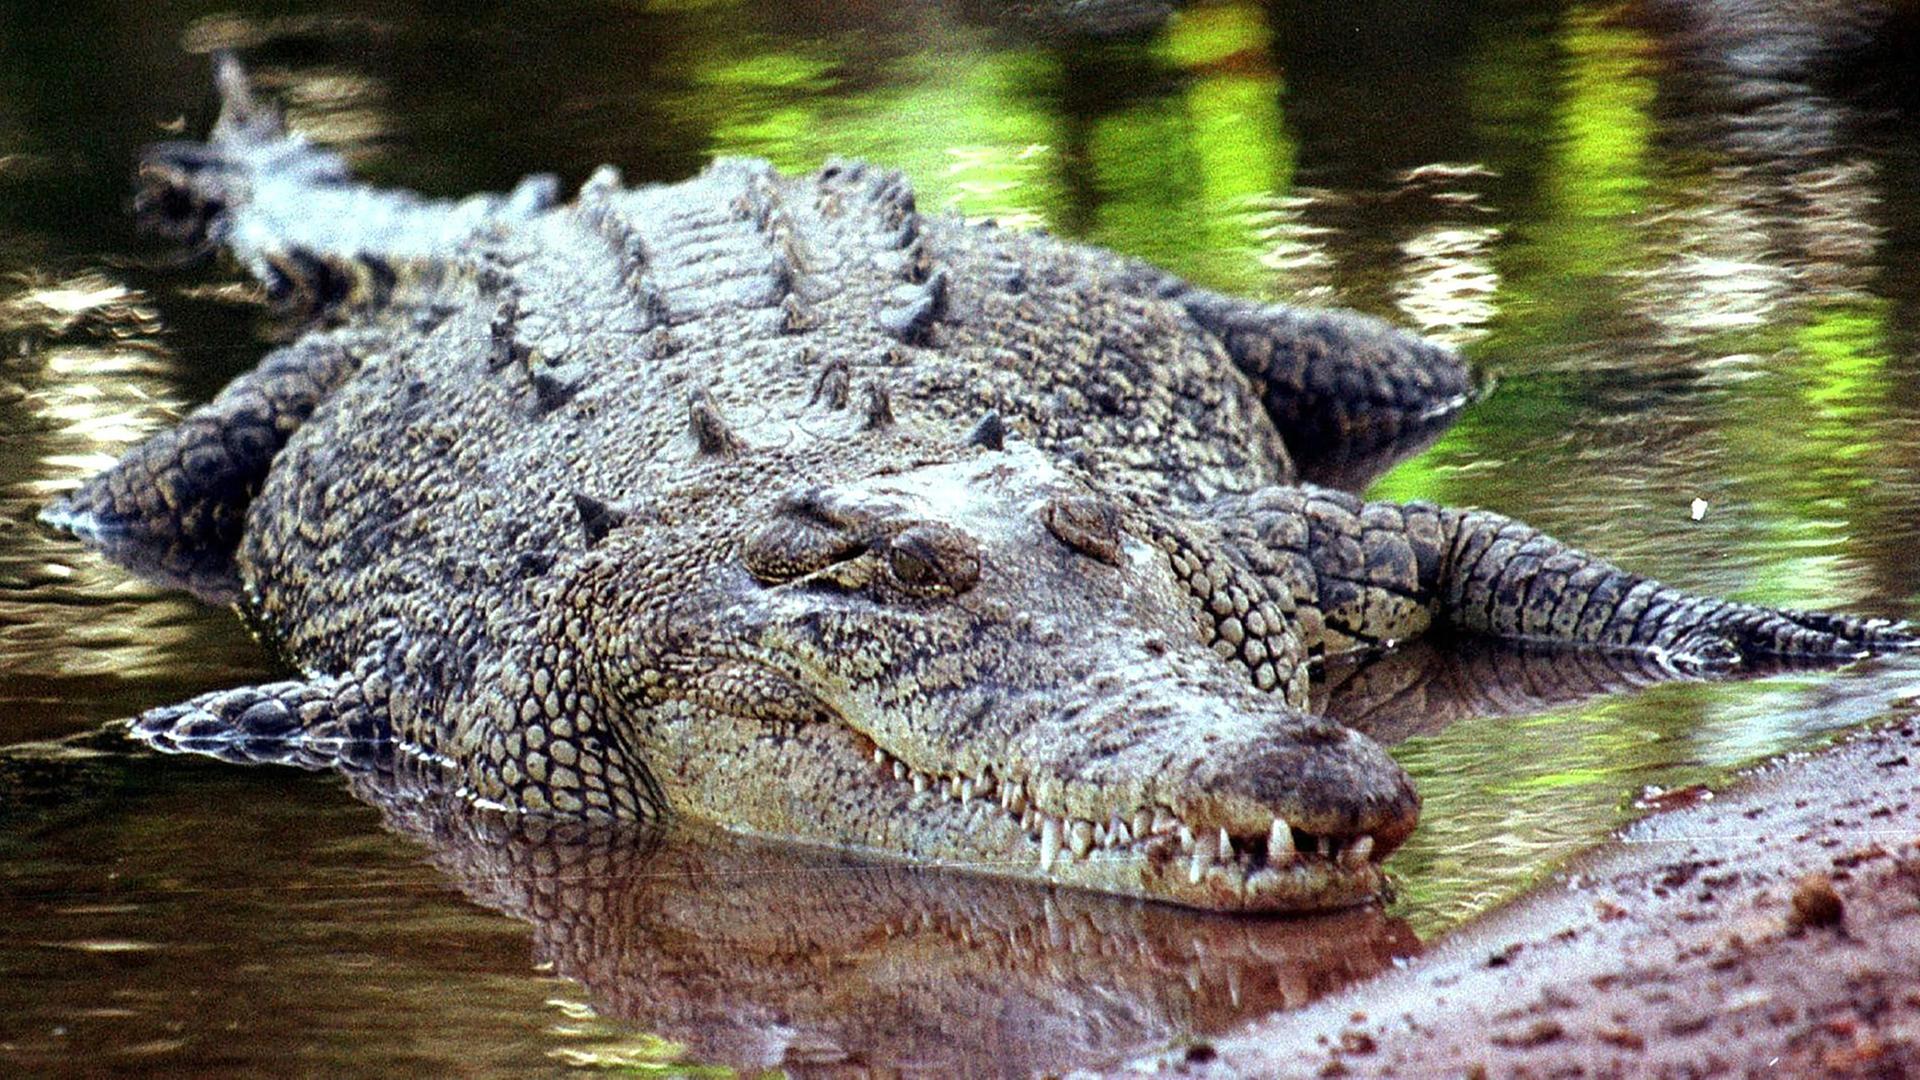 Krokodil in Australien, aufgenommen am 03.09.2013 